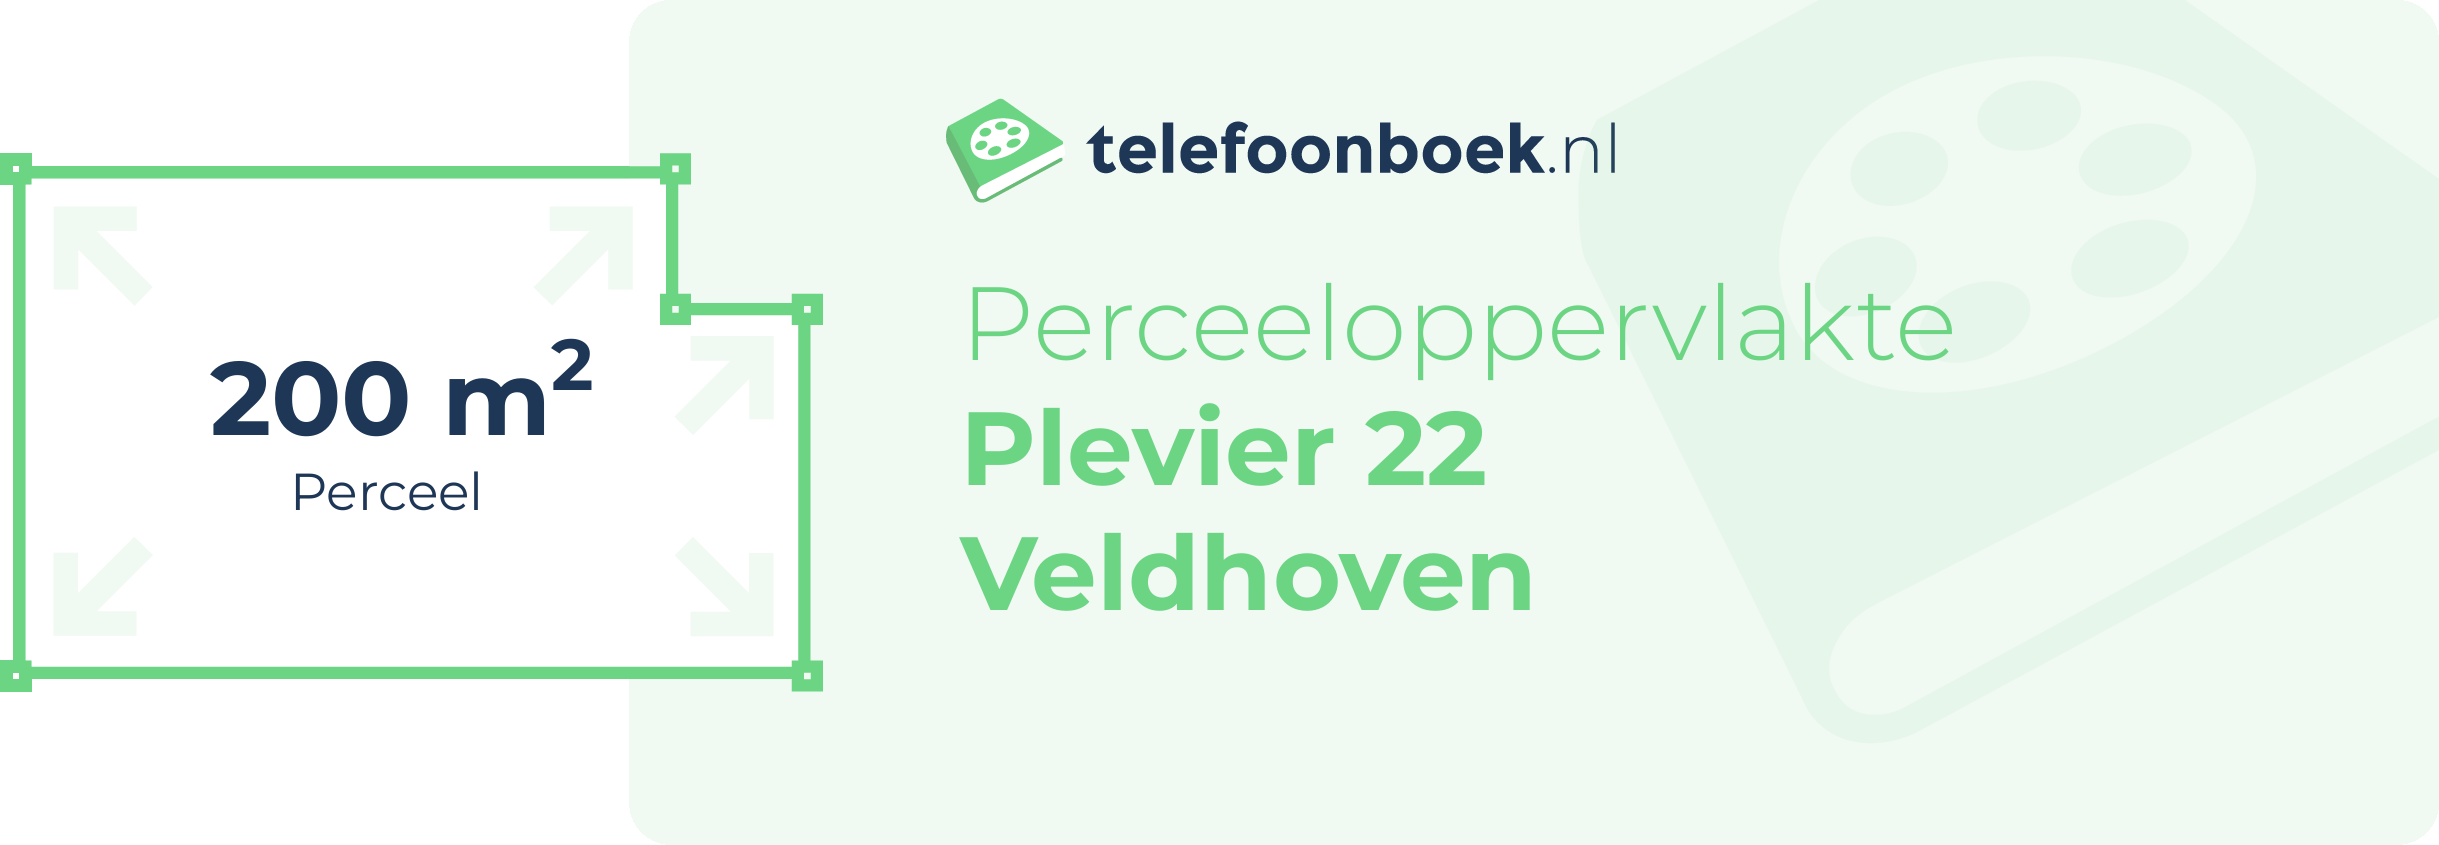 Perceeloppervlakte Plevier 22 Veldhoven